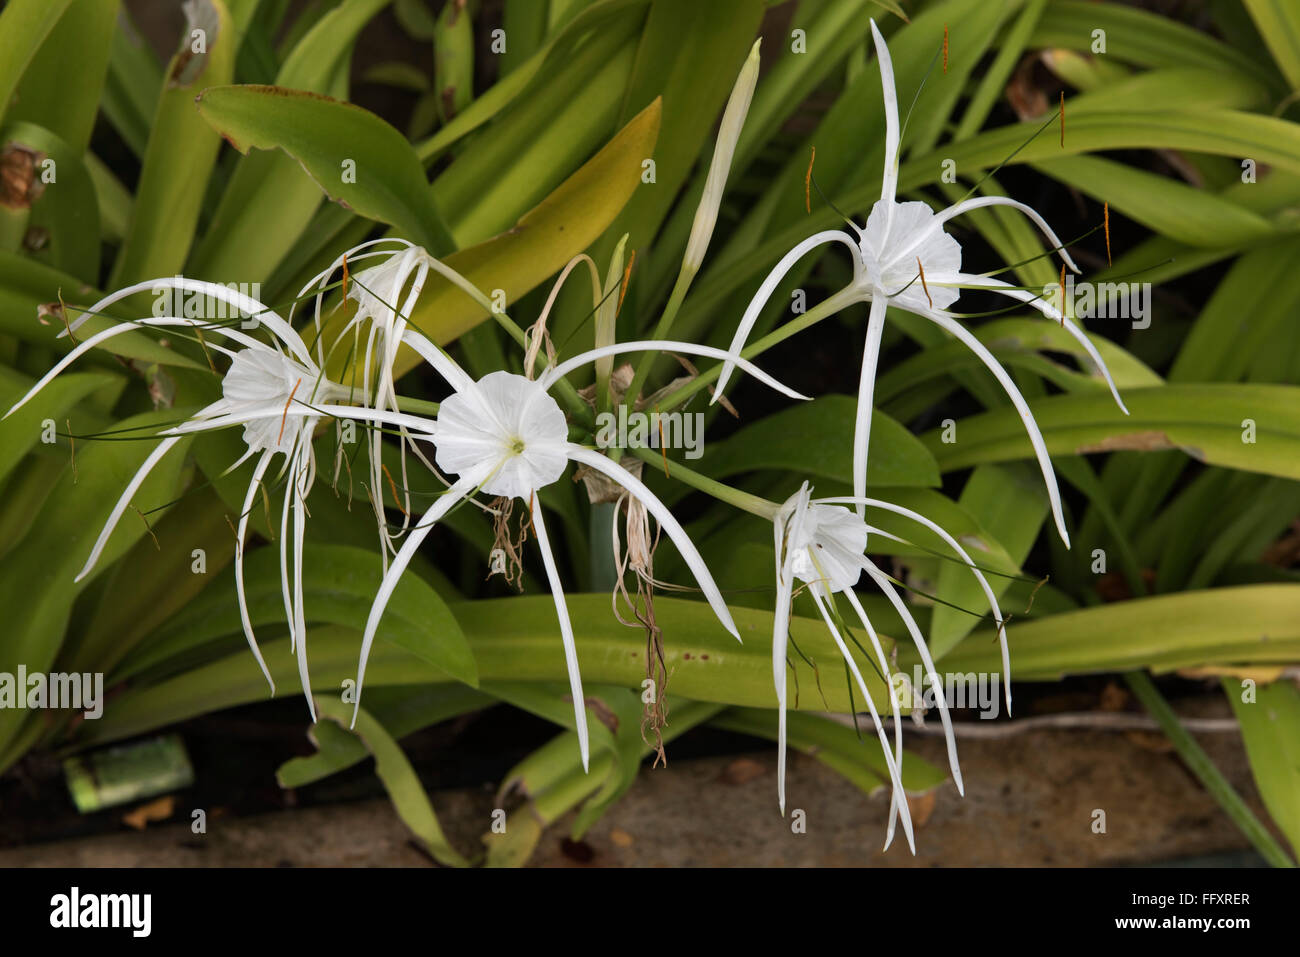 Eine peruanische Narzisse oder Strand Spider Lily, Hymenocallis Littoralis, blühende Zierpflanzen Zwiebelgewächs, Thailand Stockfoto